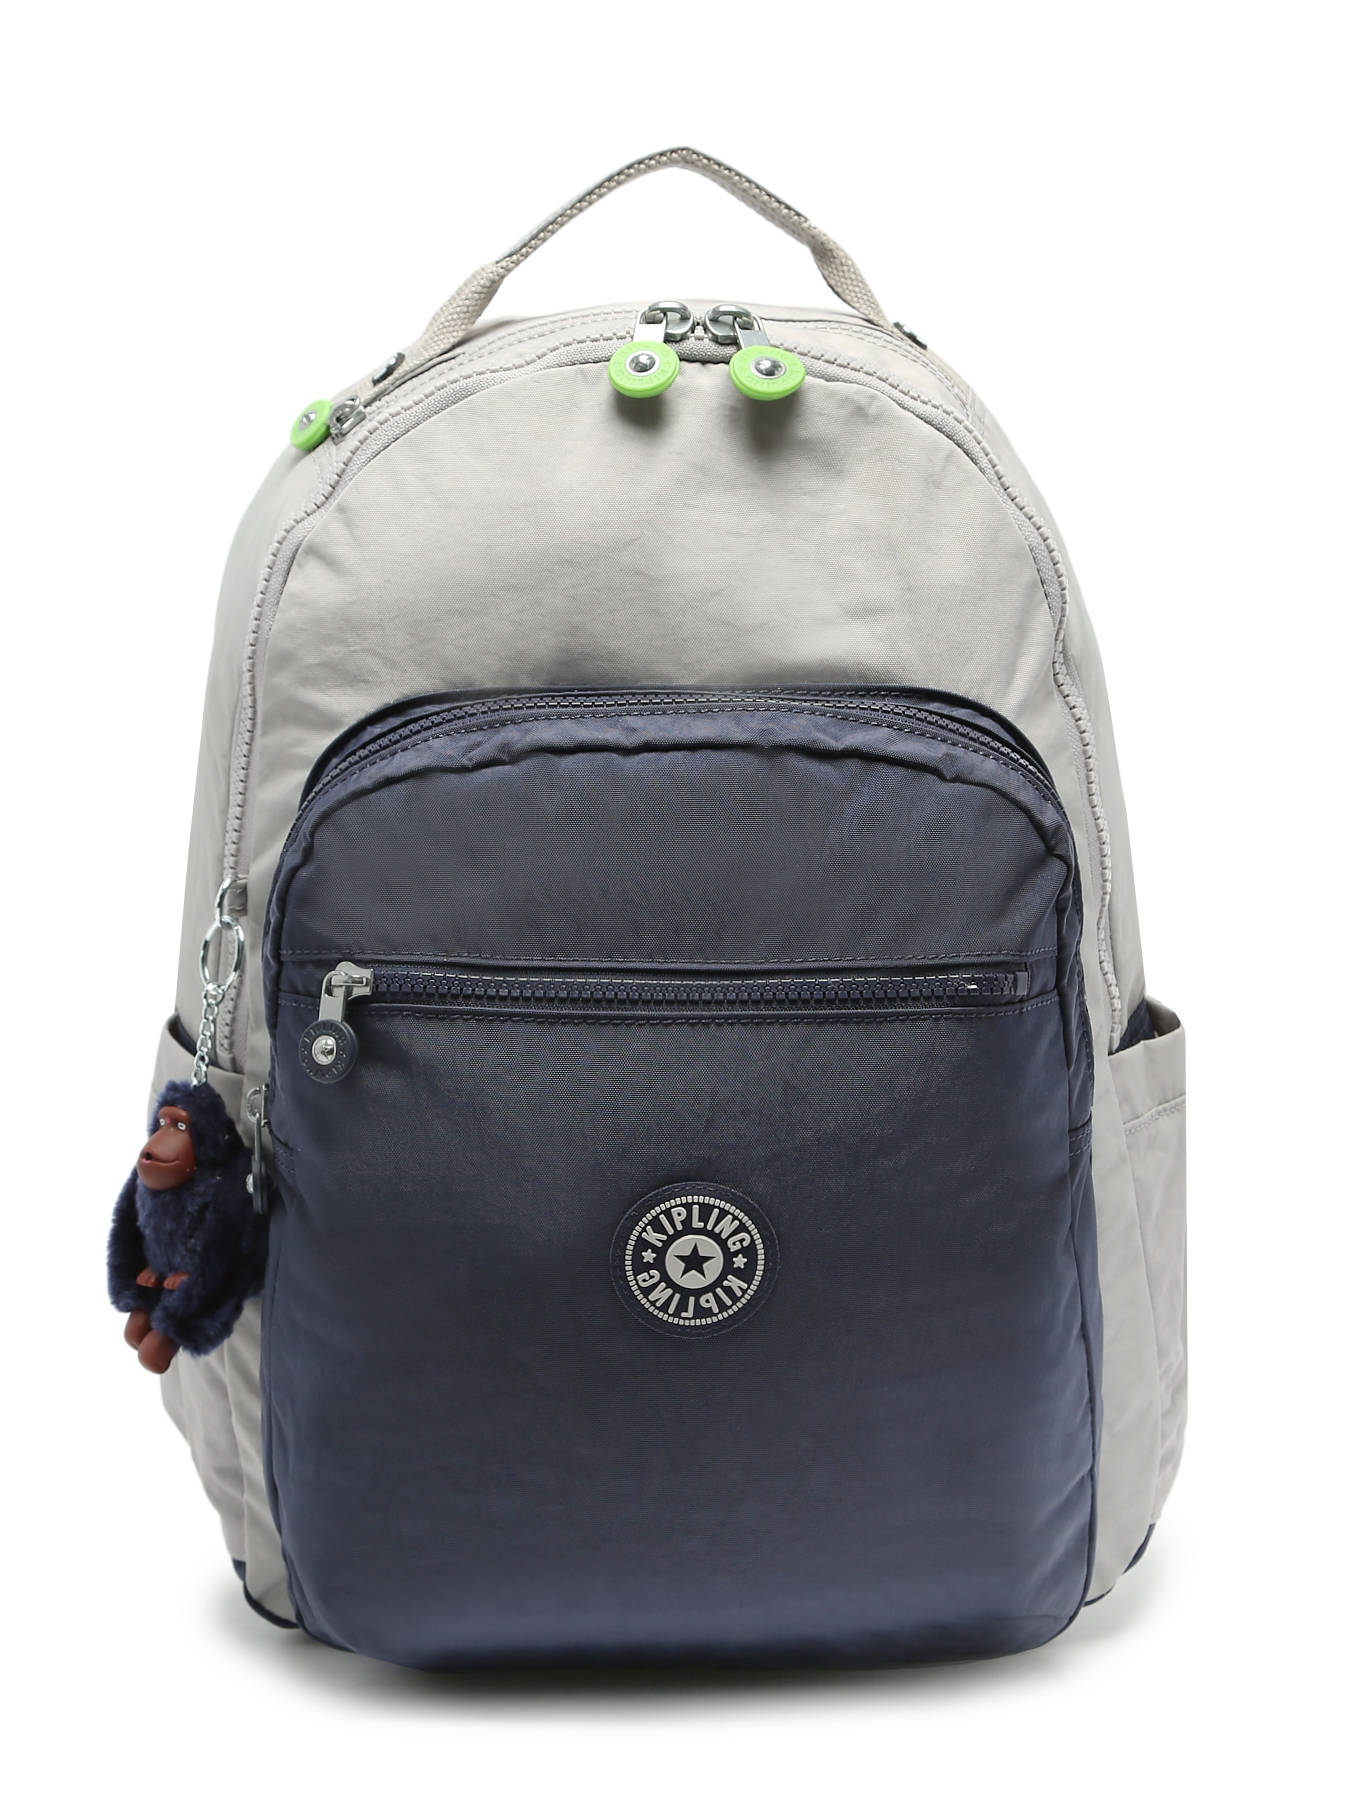 Kipling City Pack Mini Printed Backpack : Target